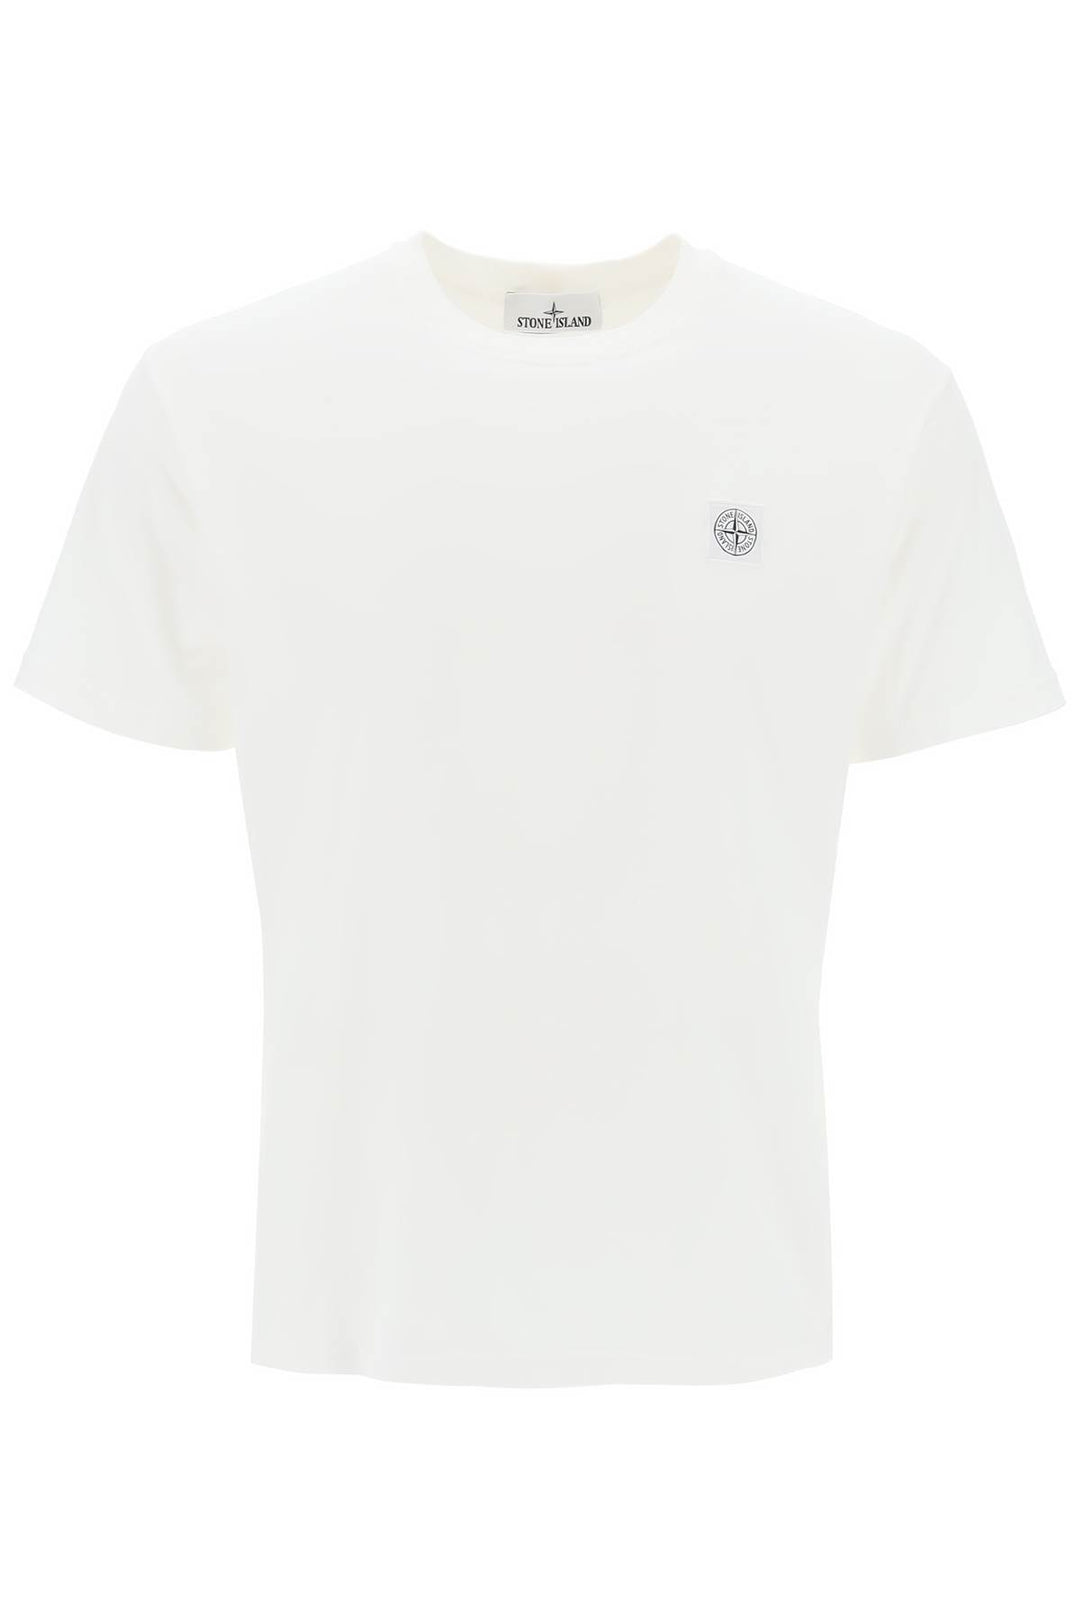 Stone Island Crew Neck T Shirt With Logo Patch   Bianco